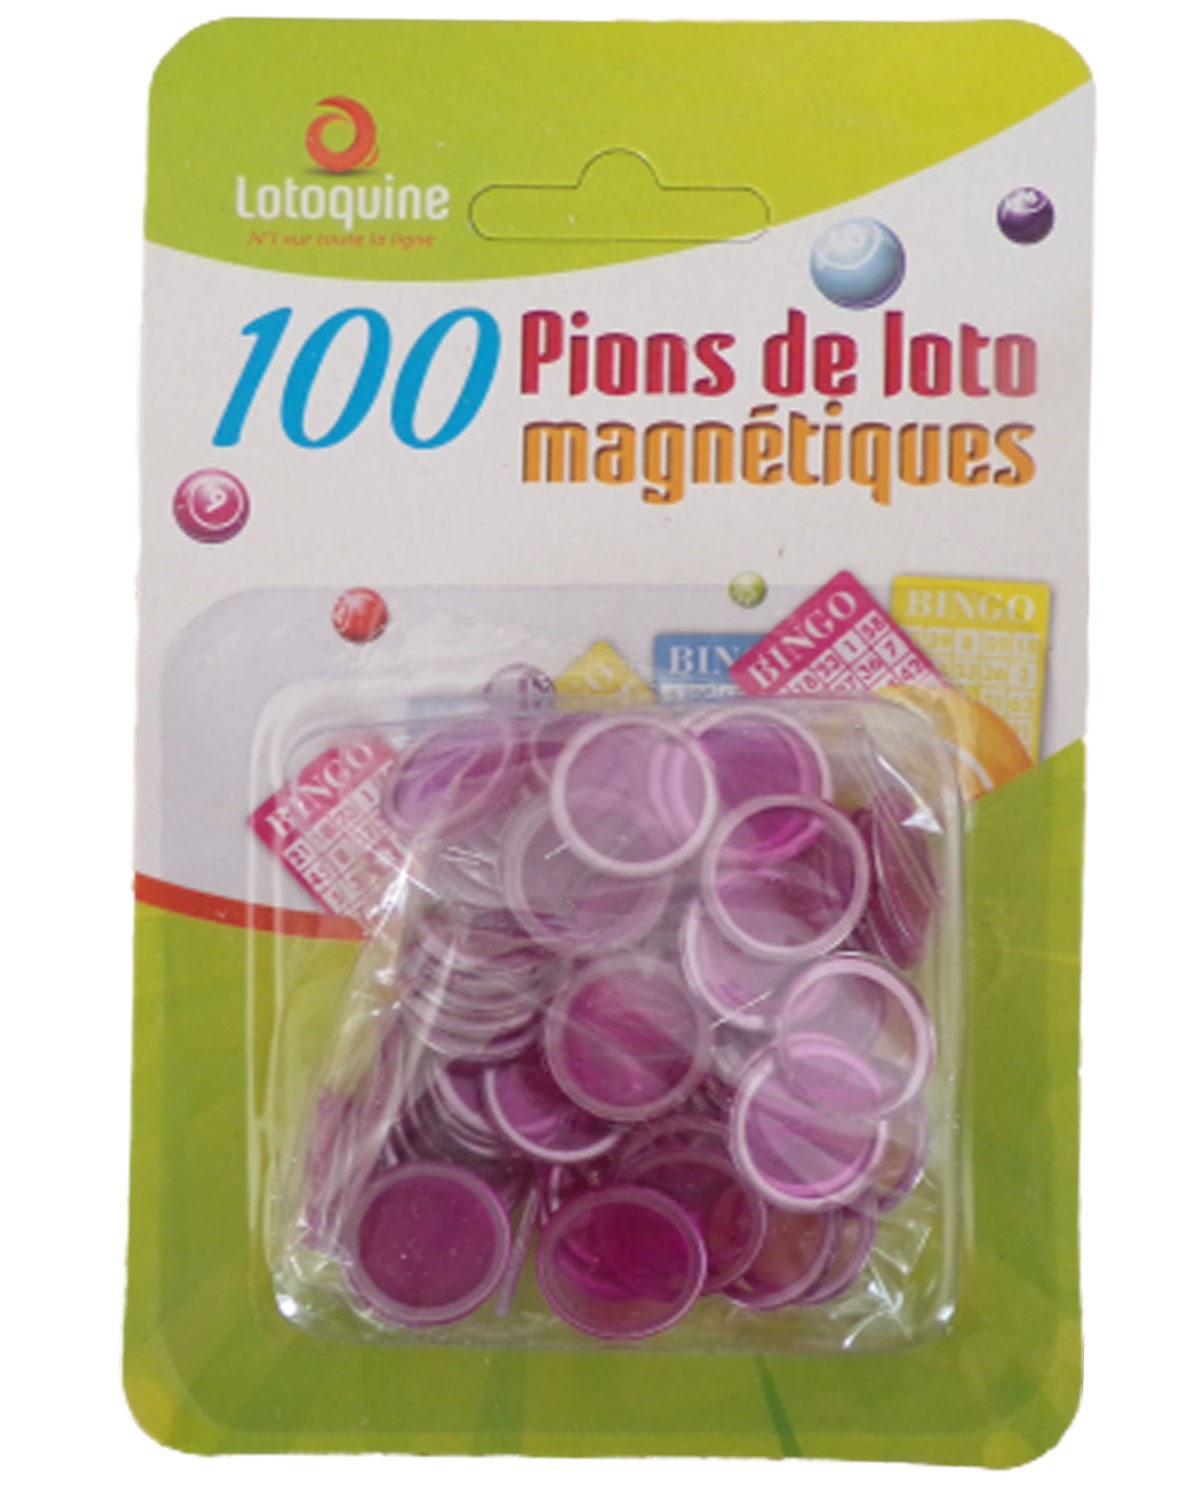 Boule de loto magnetique rouge avec 100 pions - Lotoquine